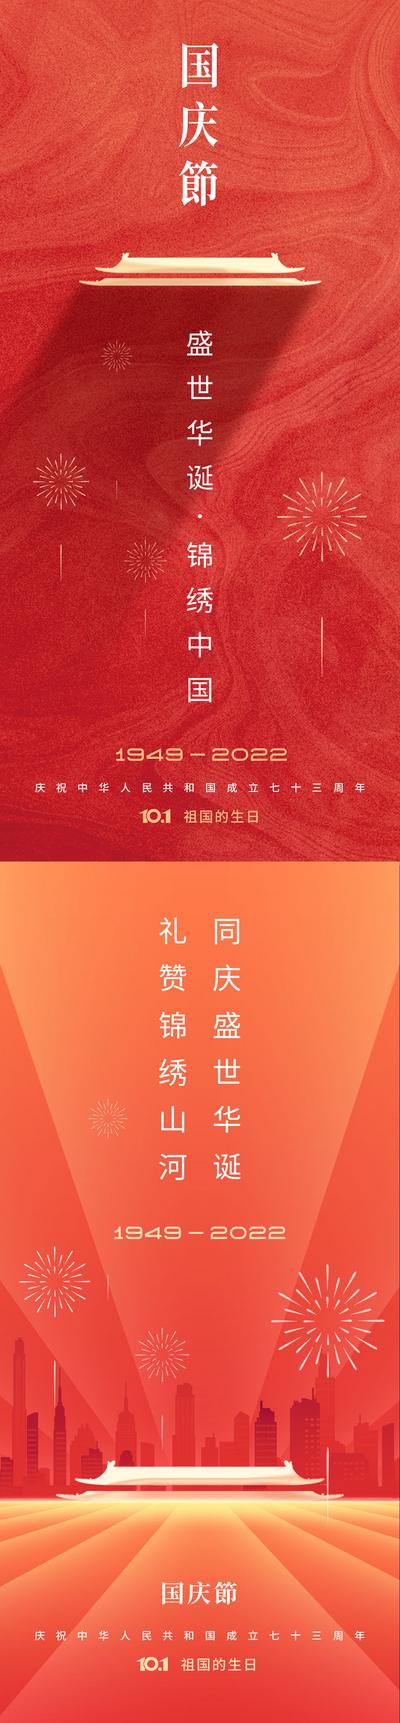 南门网 海报 地产 公历节日 国庆节 建国 73周年 简约